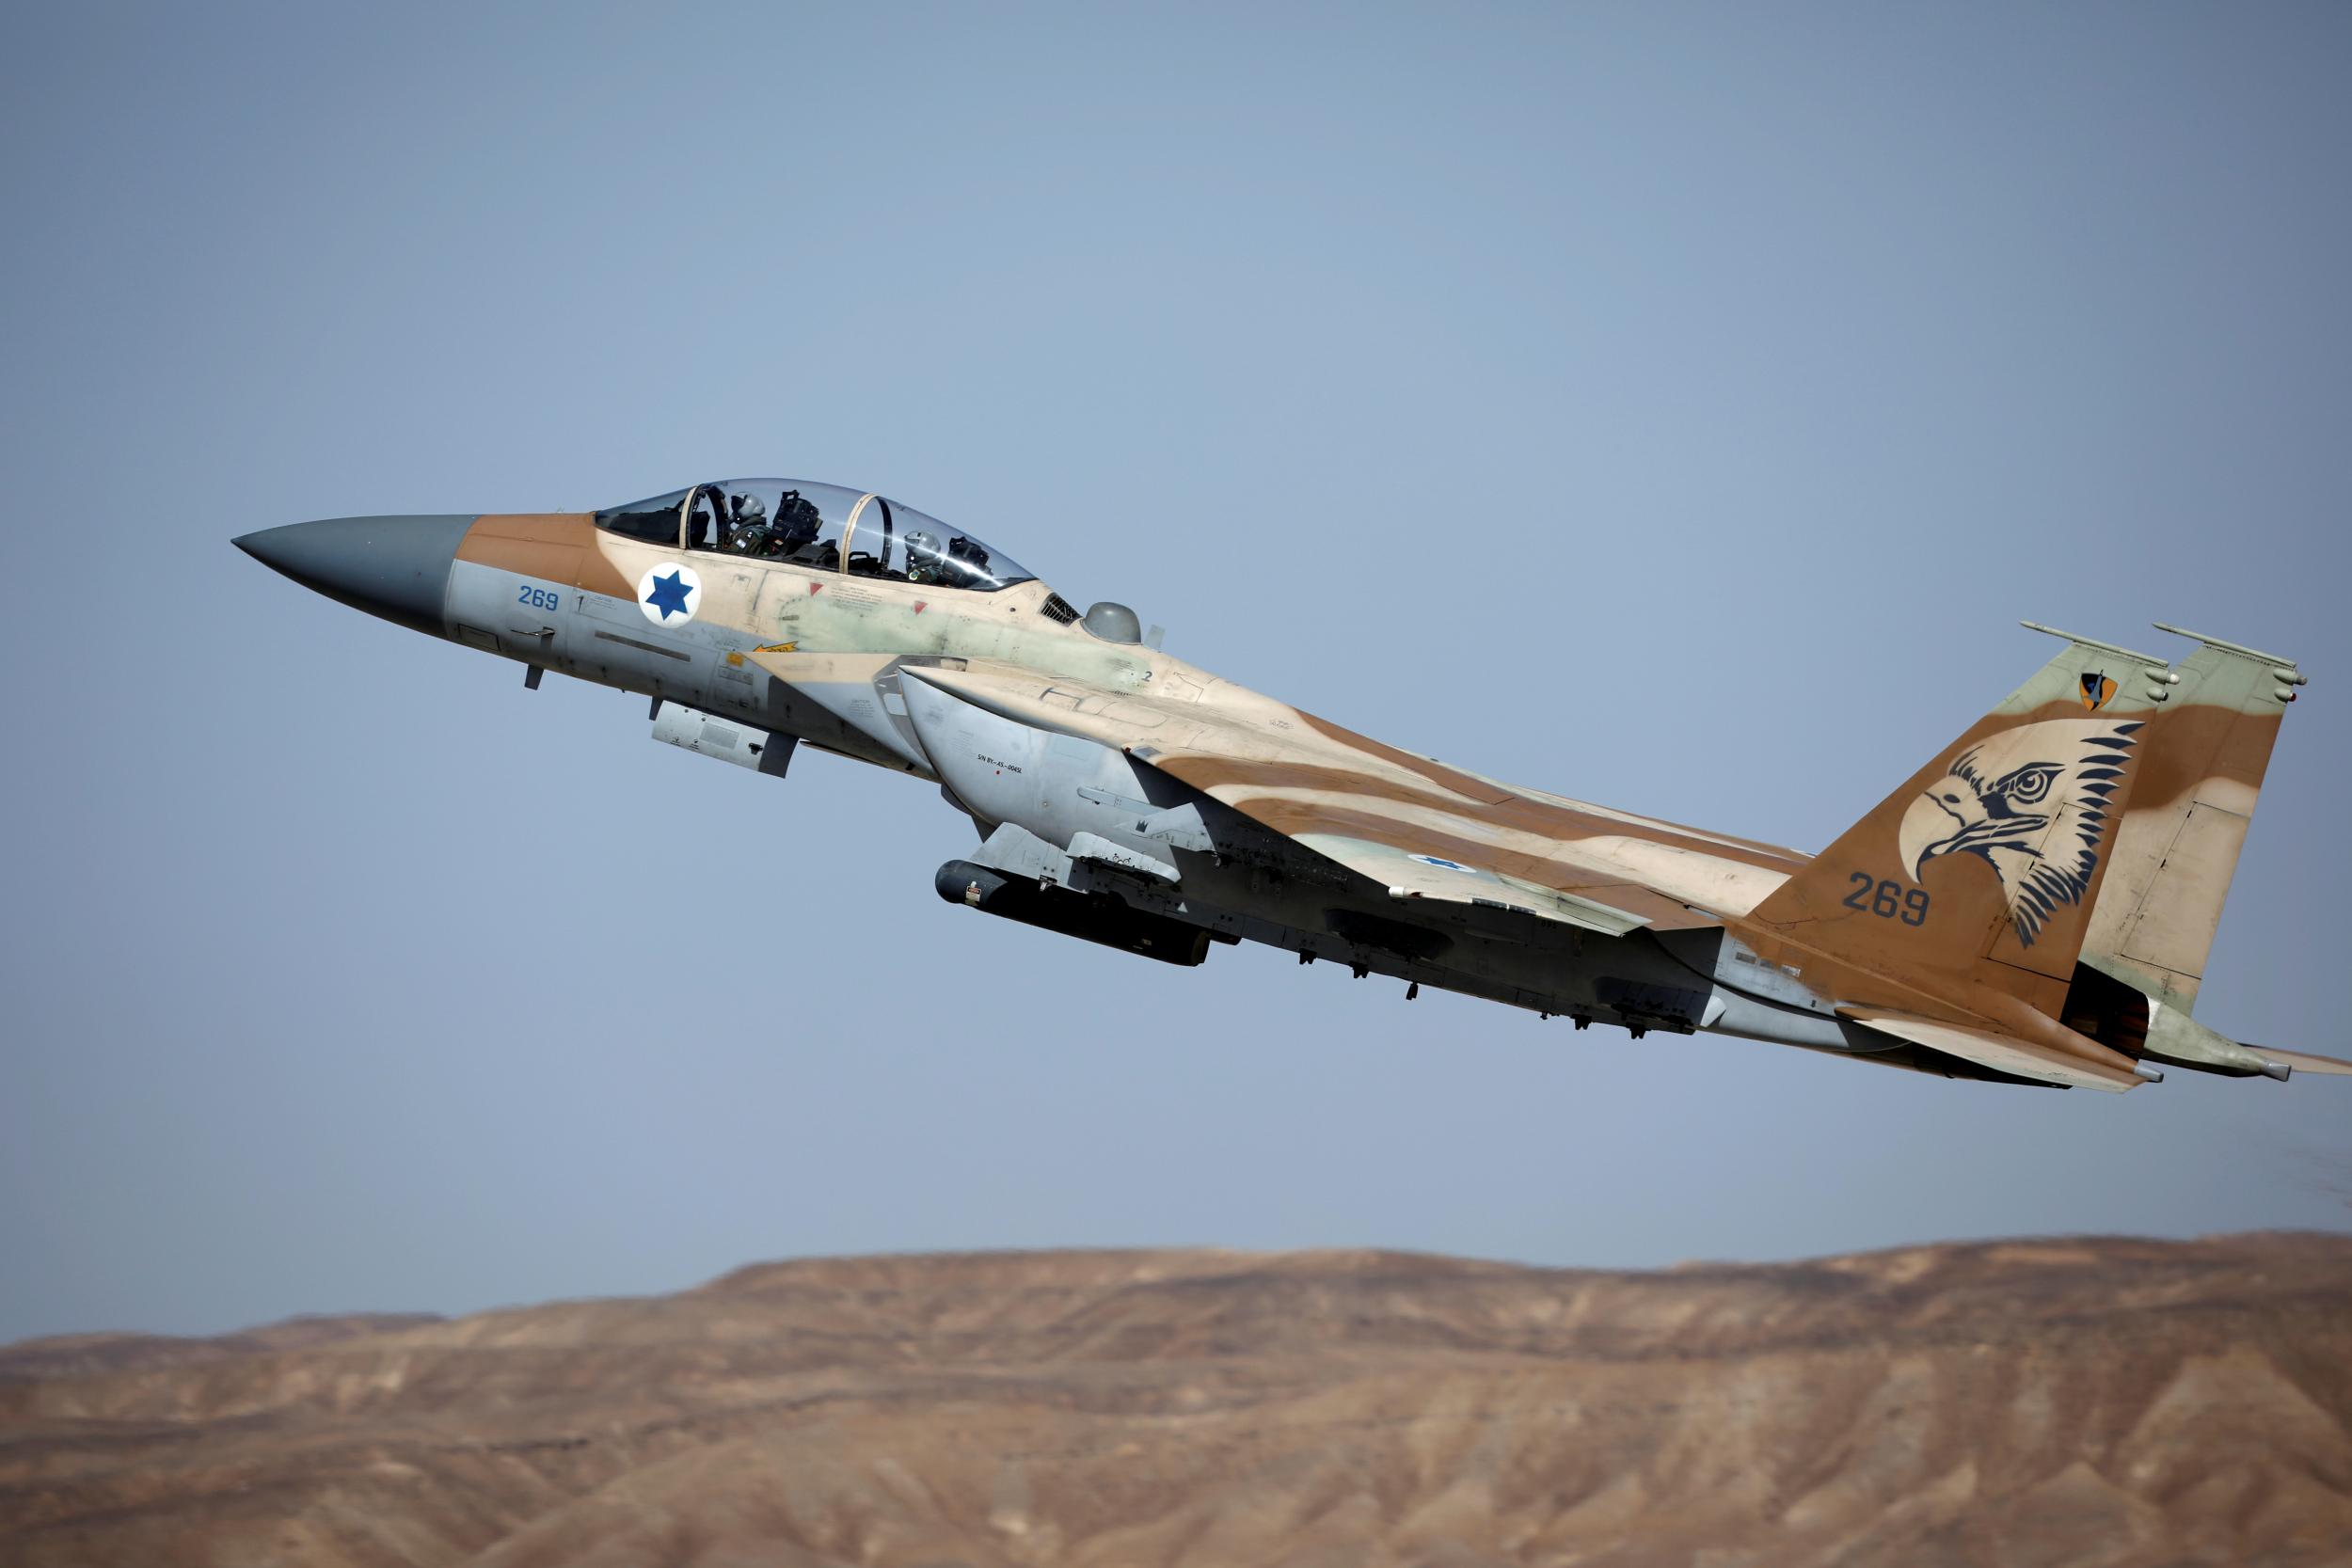 Βίντεο: Αεροπορικό υπερθέαμα της ισραηλινής Αεροπορίας για την αποφοίτηση σειράς ιπταμένων